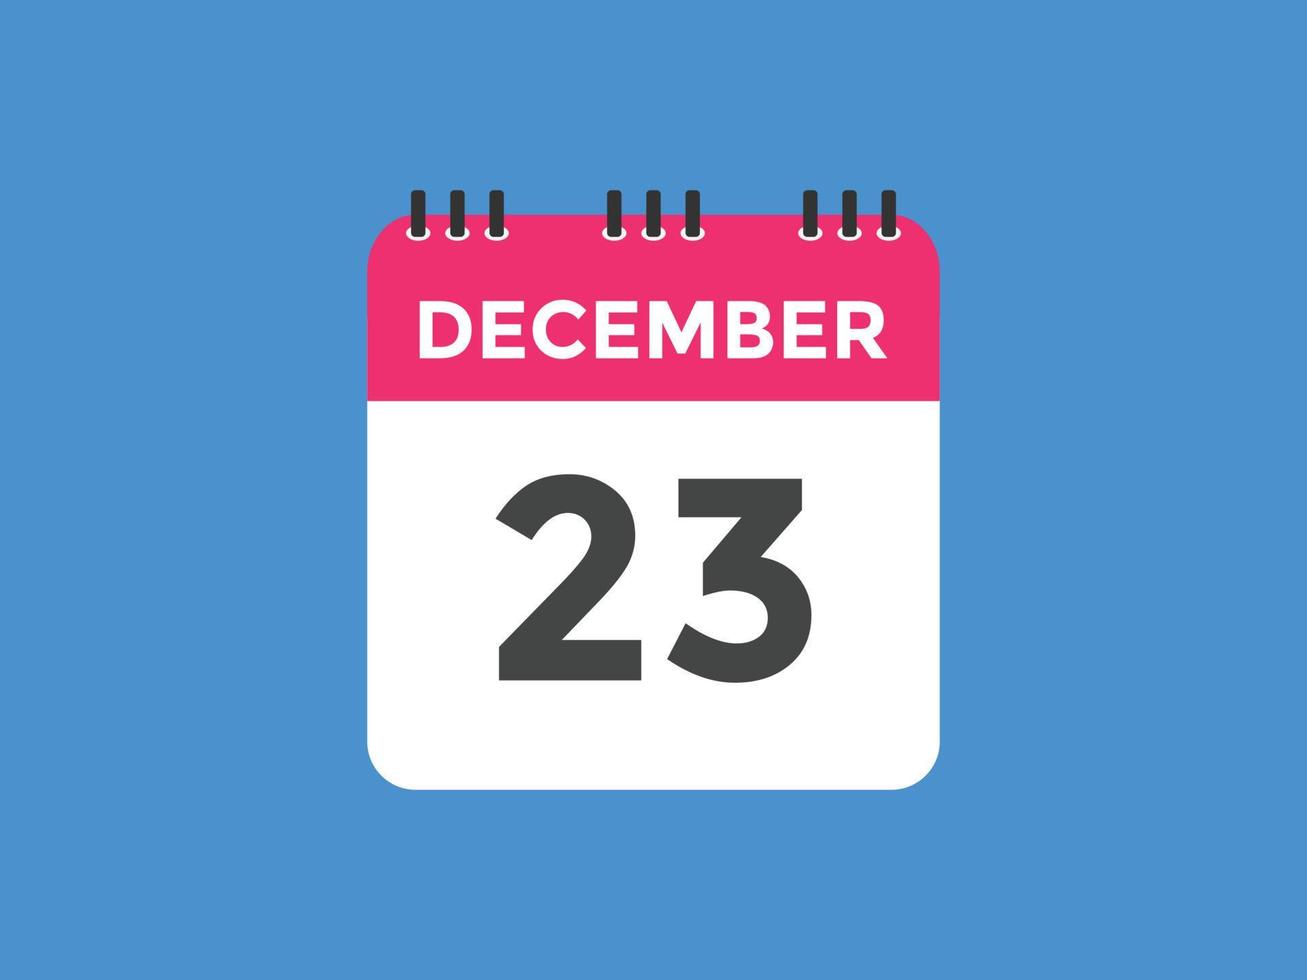 dicembre 23 calendario promemoria. 23 dicembre quotidiano calendario icona modello. calendario 23 dicembre icona design modello. vettore illustrazione